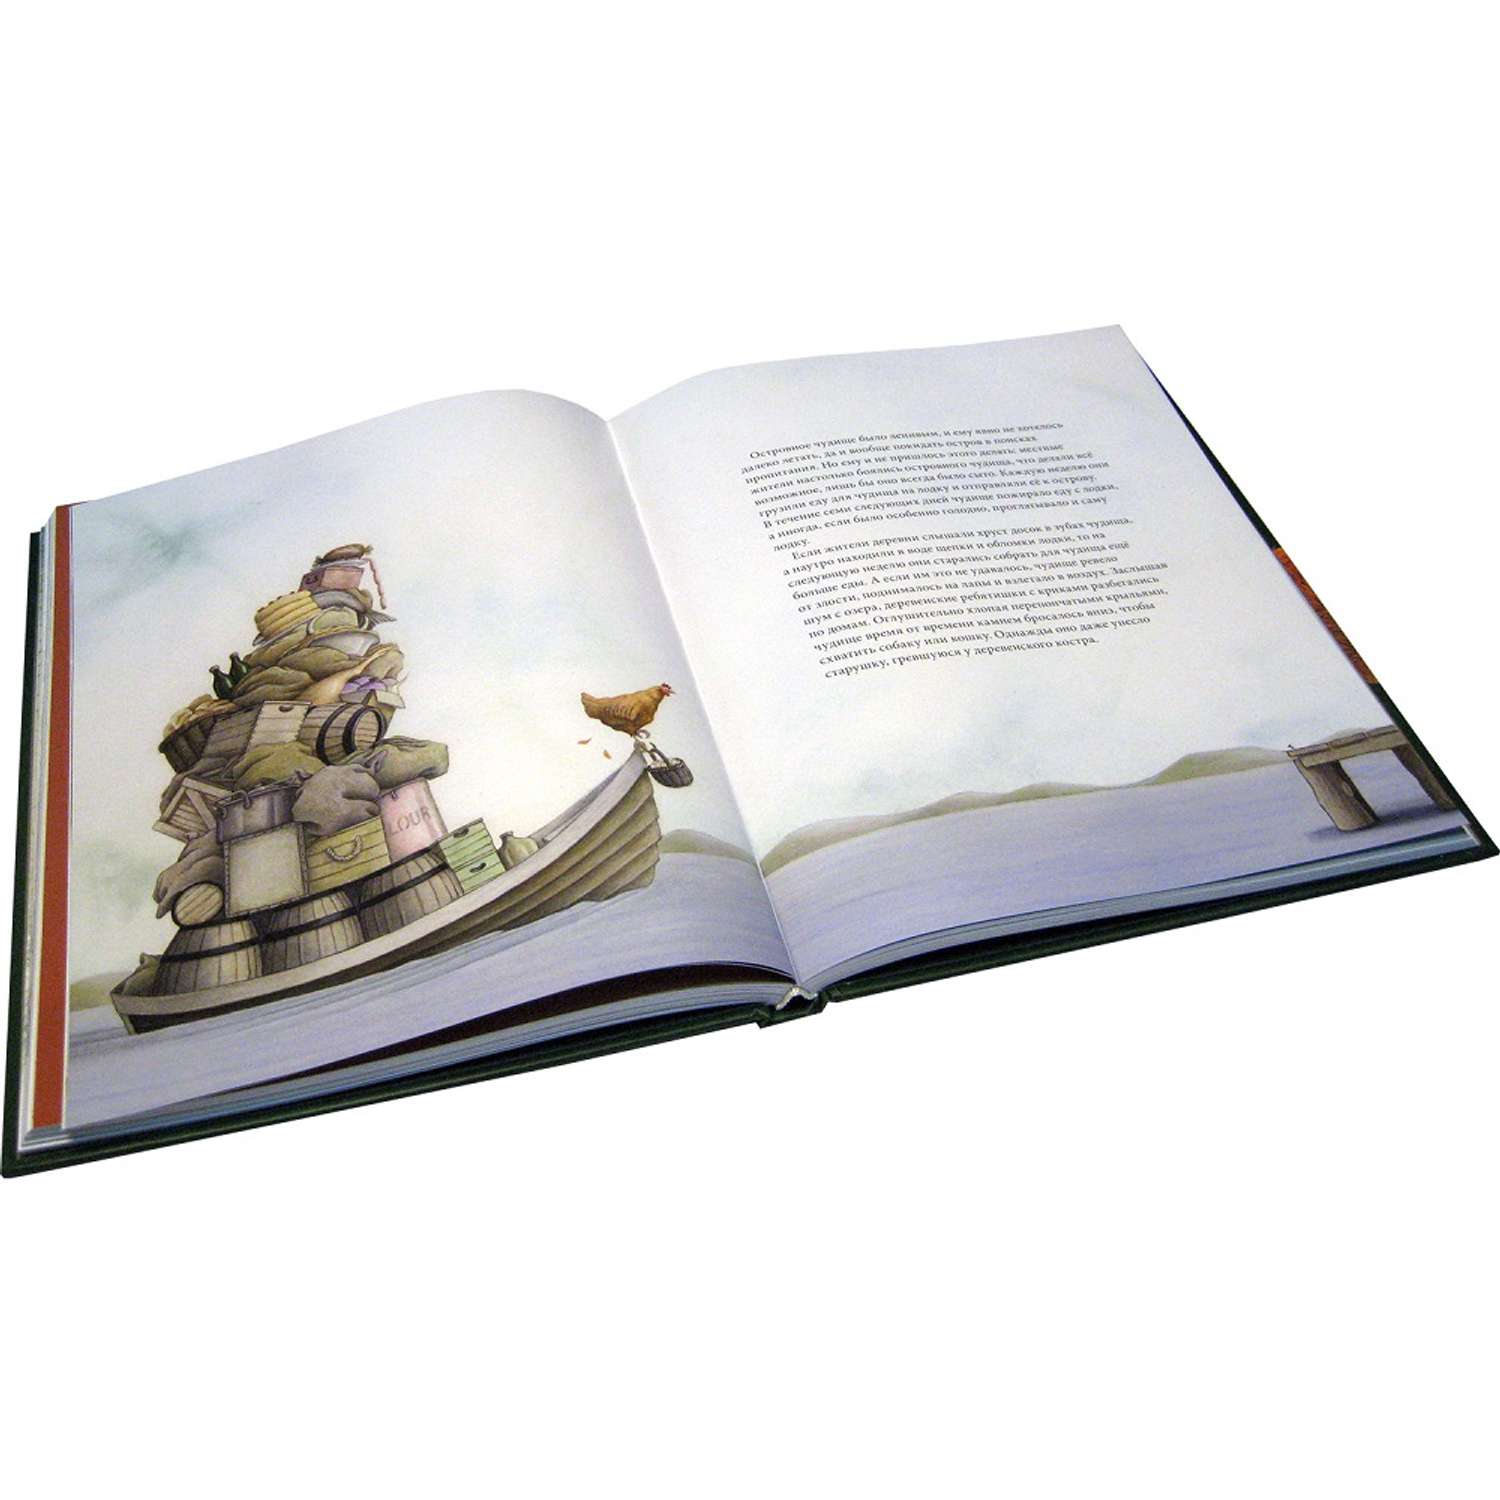 Бреслин Тереза Добрая книга Сказочные существа Шотландии Книга 2 иллюстратор Кейт Липер - фото 4